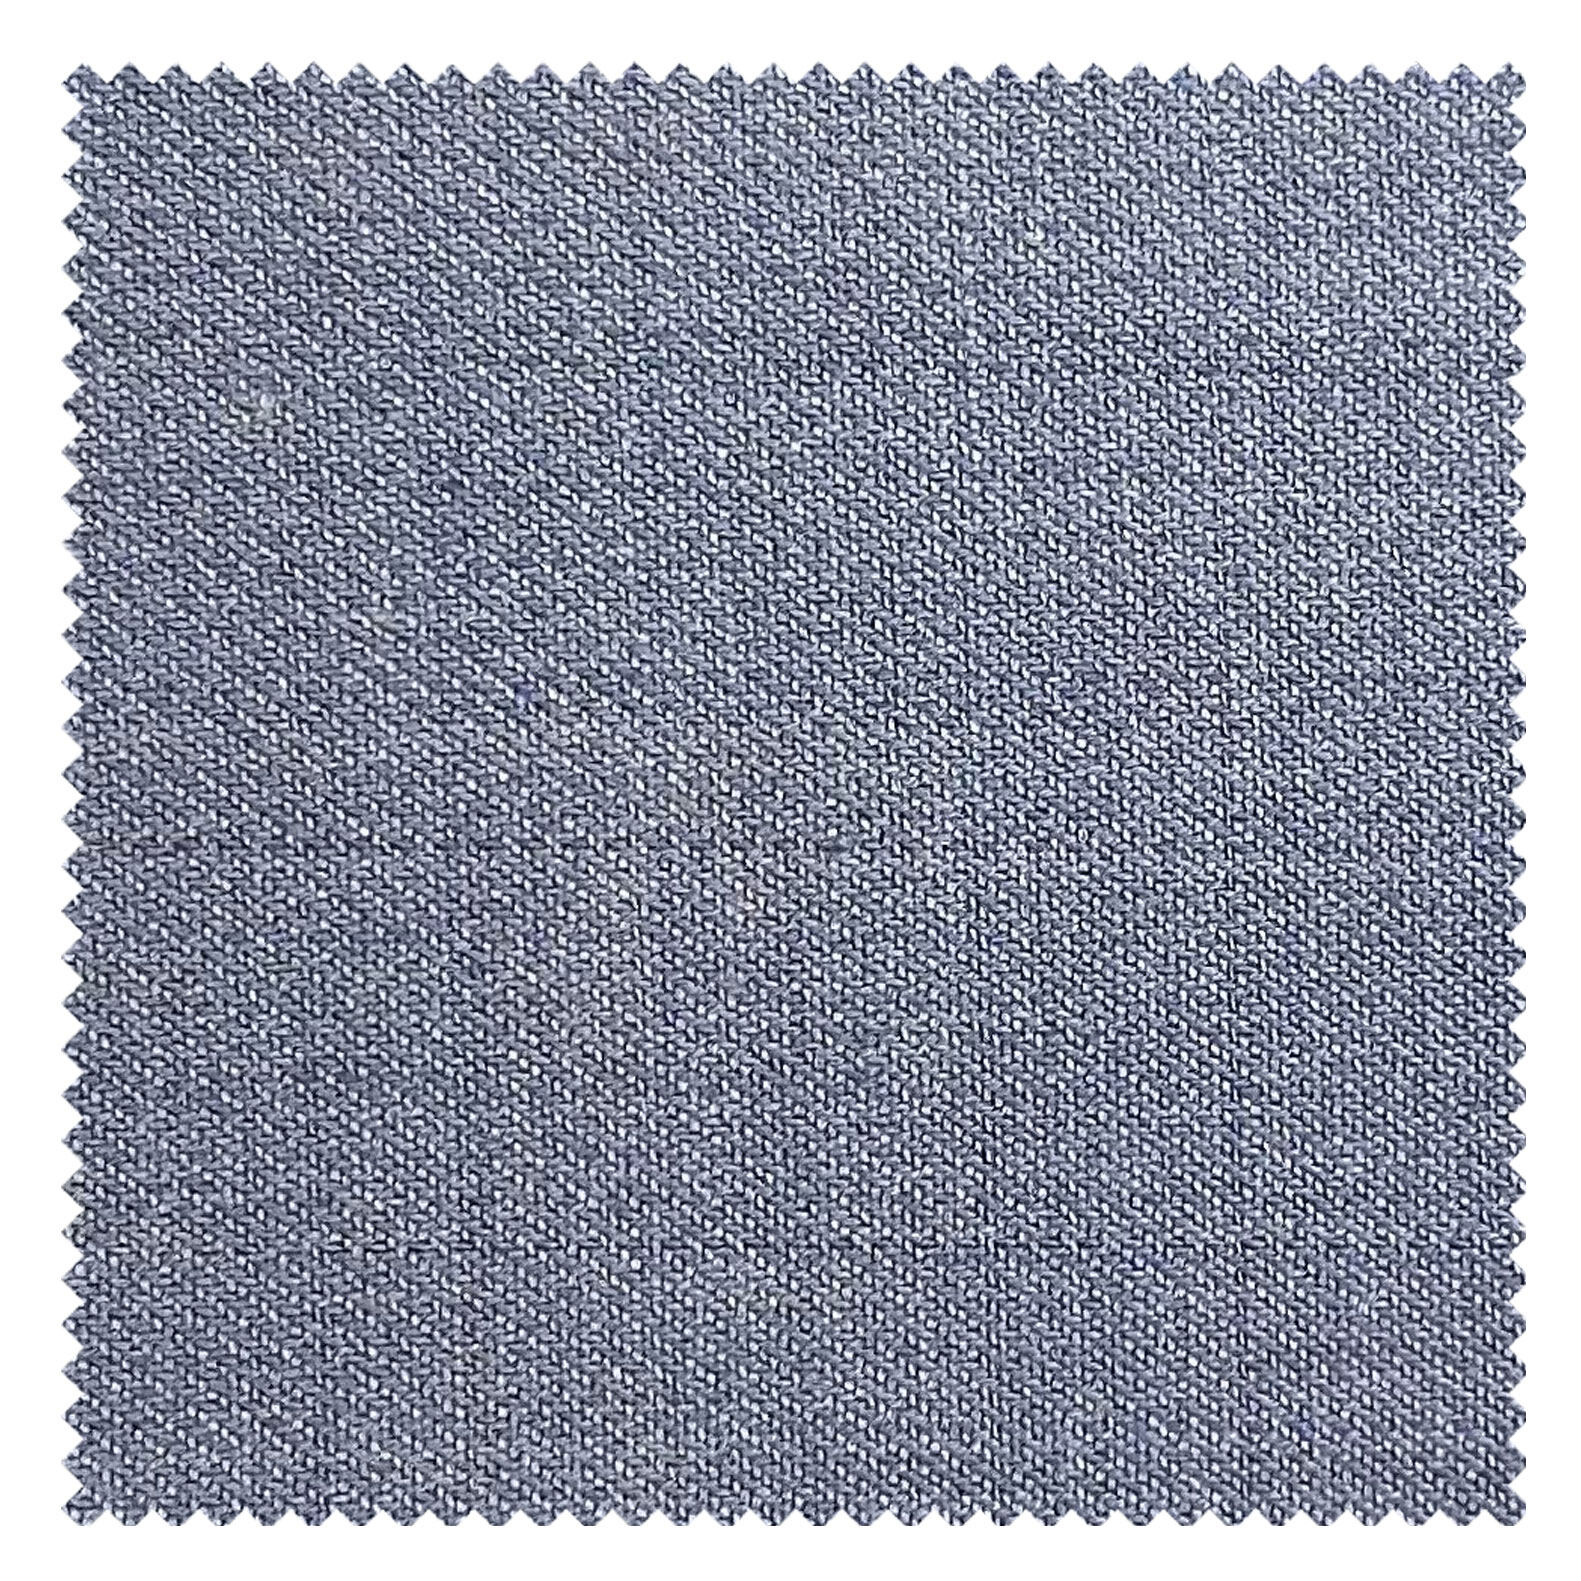 KINGMAN Silk Wool Fabric HAMPSTEAD ZANOTTI BLUE GREY ผ้าตัดชุดสูท กางเกง ผู้ชาย สีเทาอมฟ้า ผ้าตัดเสื้อ ยูนิฟอร์ม ผ้าวูล ผ้าคุณภาพดี กว้าง 60 นิ้ว ยาว 1 เมตร